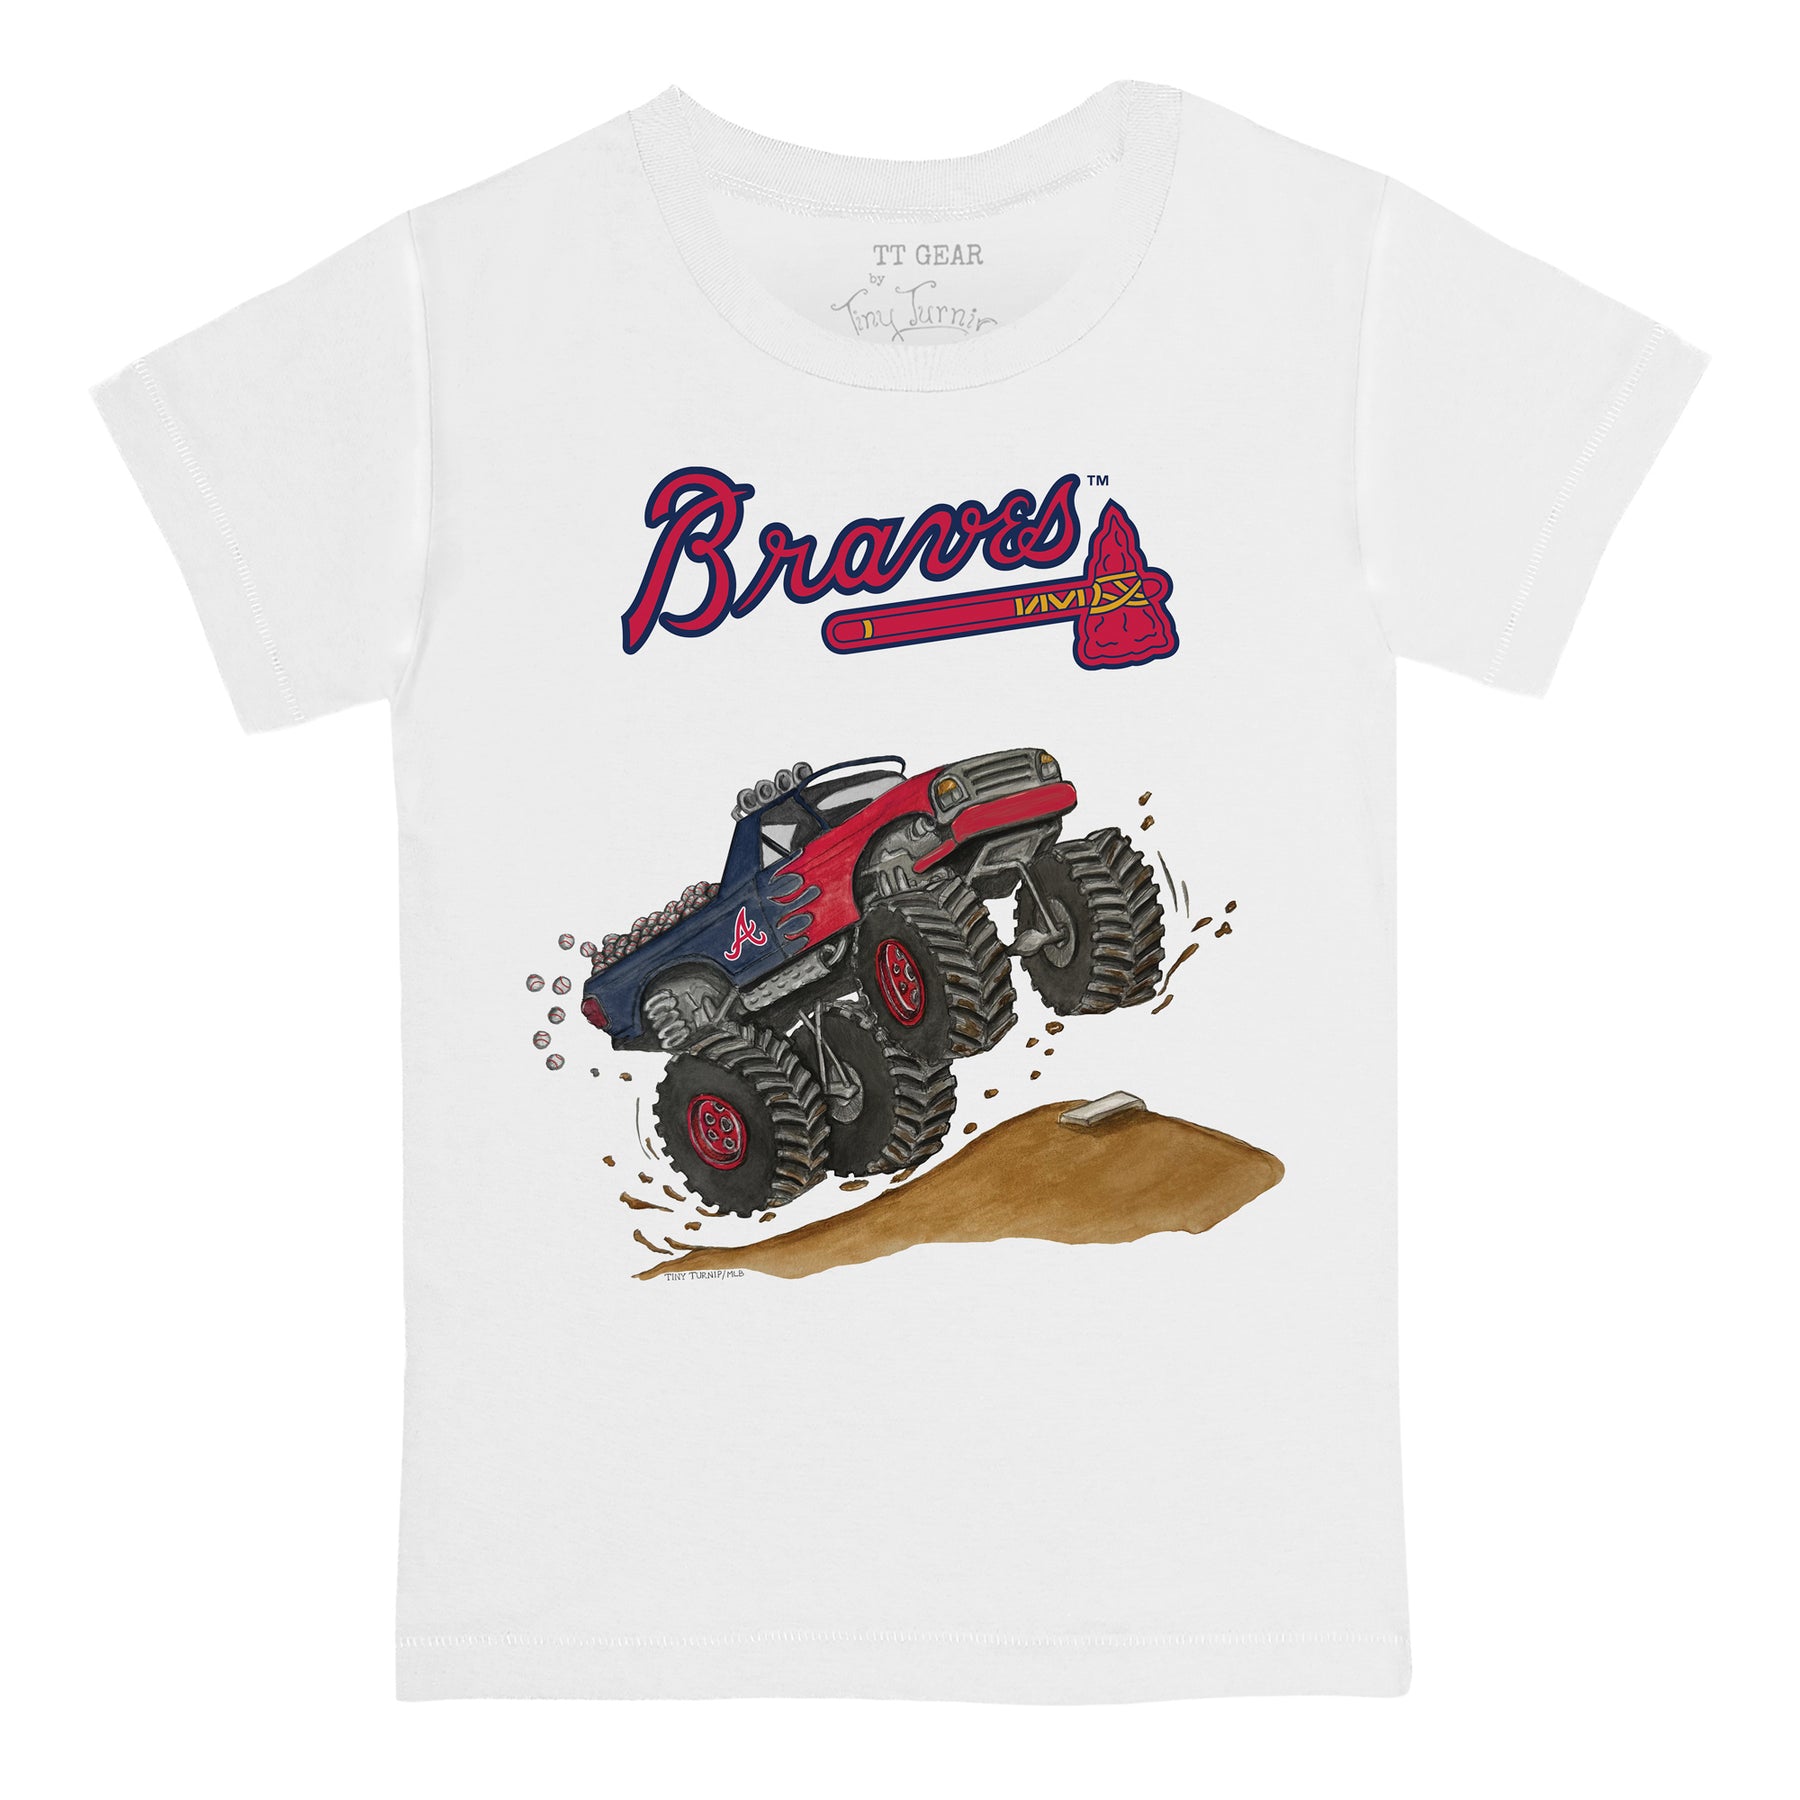 Atlanta Braves Monster Truck Tee Shirt